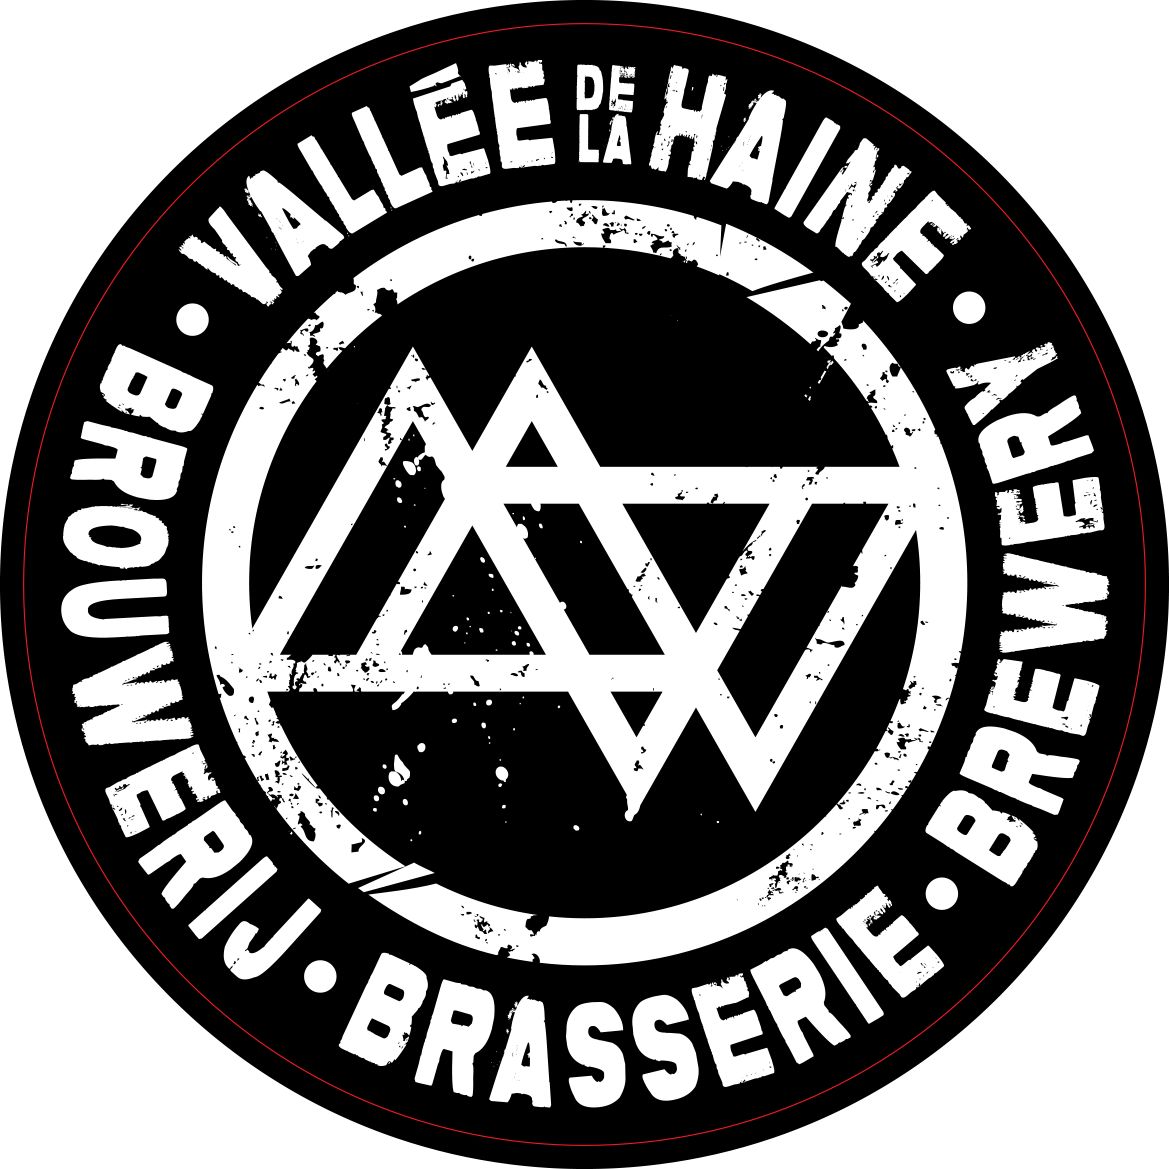 Brasserie Vallée de la Haine